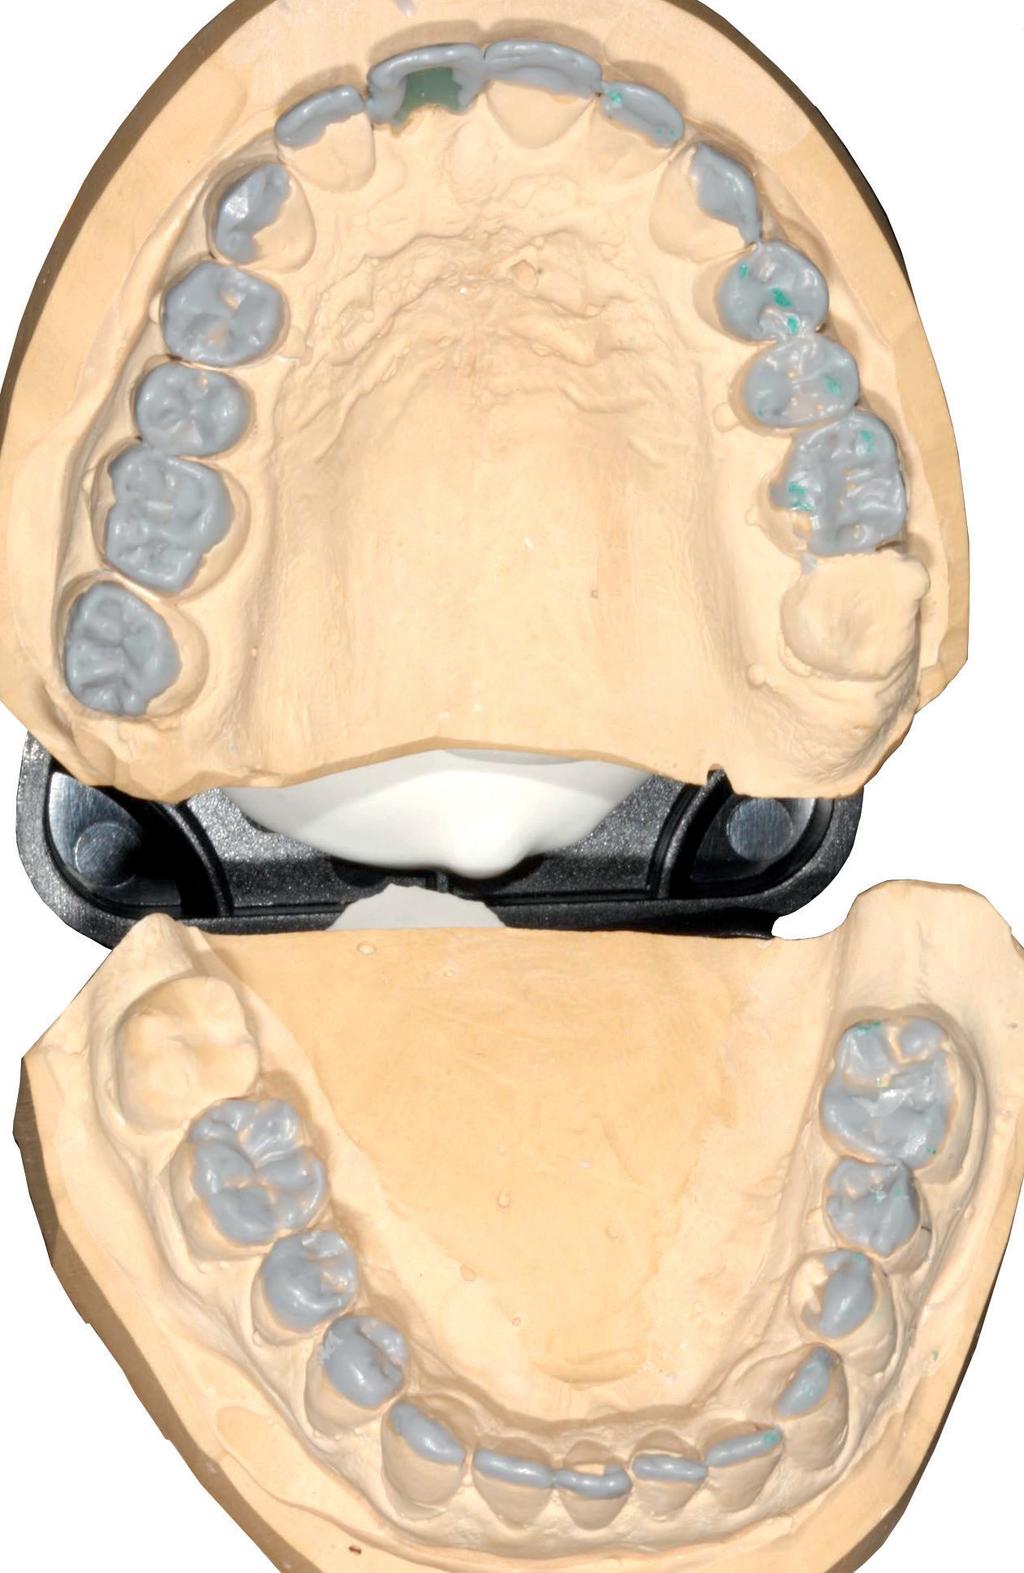 Mit einem entsprechenden Mock-up am Patienten konnte so demonstriert werden, wie sich ästhetische Parameter wie Zahnlänge, Gesichtsprofil und -physiognomie verändern.